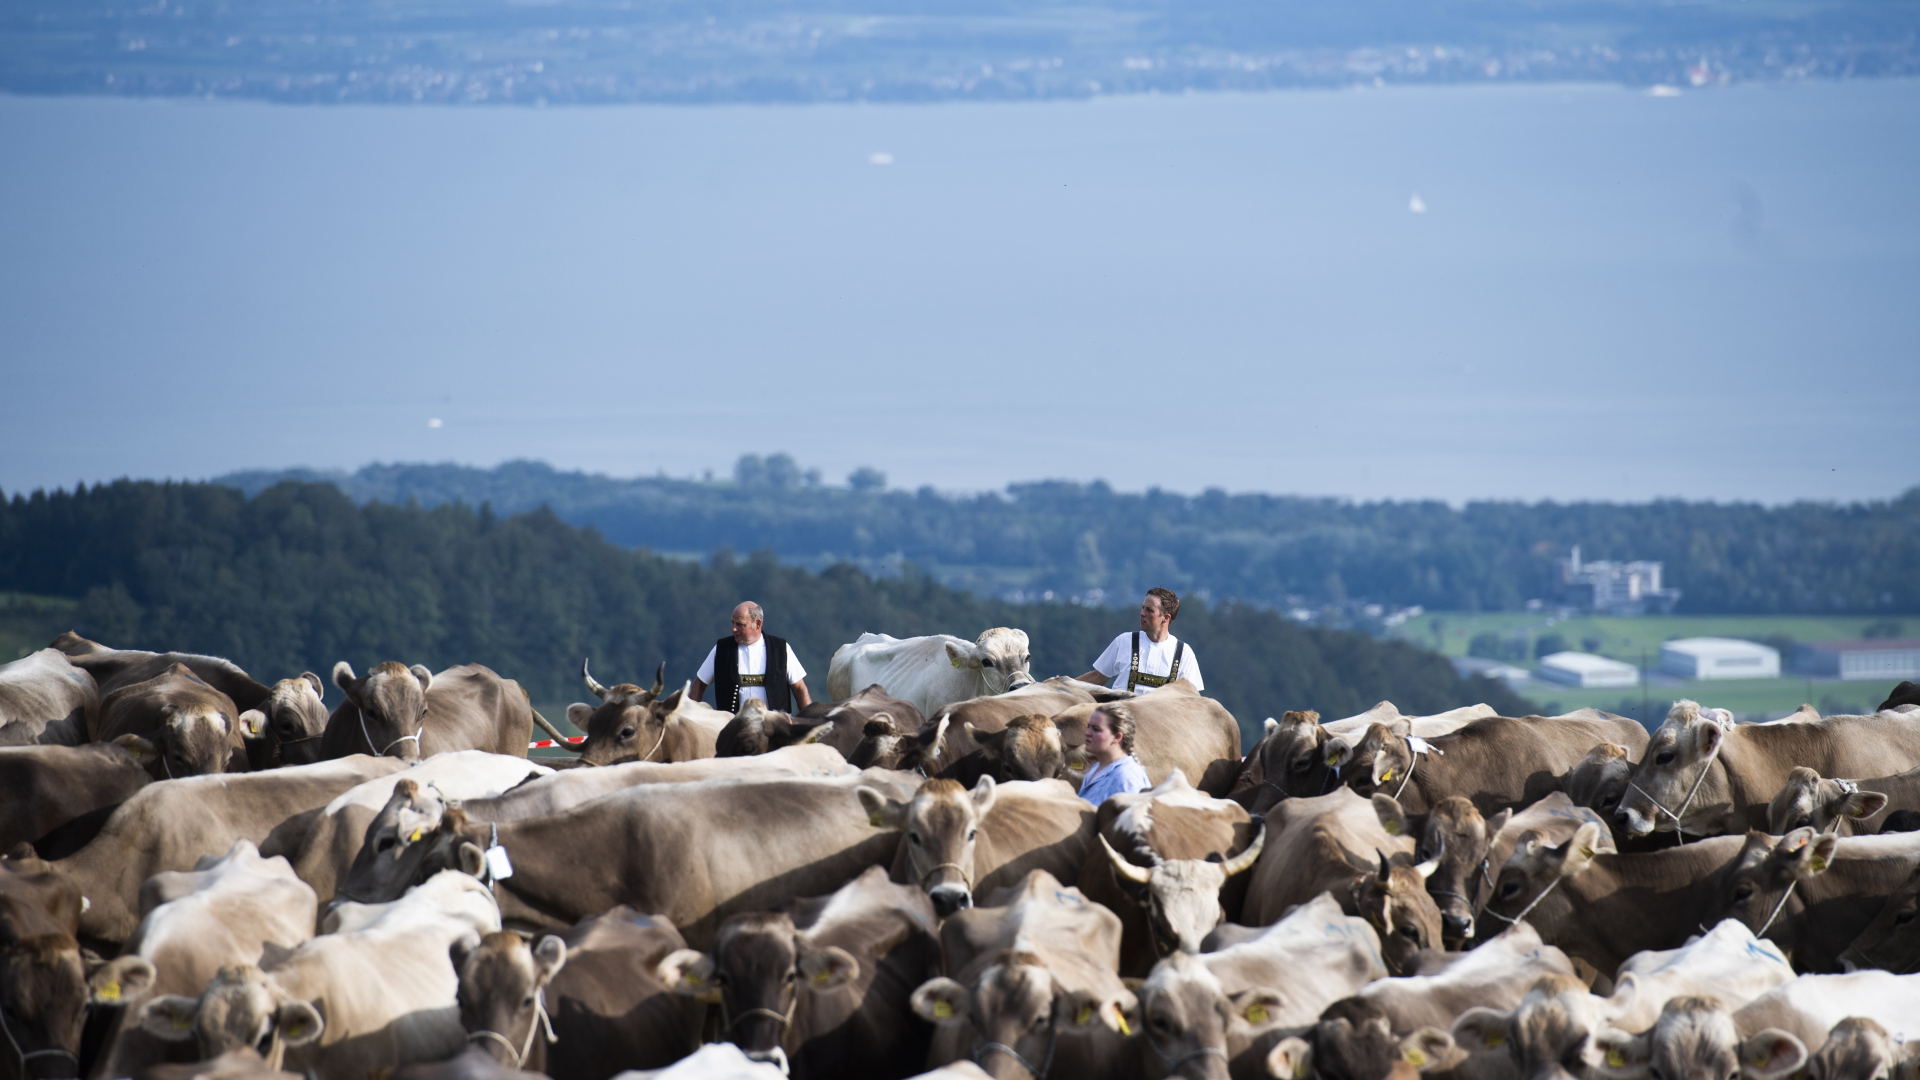 Schweizer Sennen präsentieren ihre Kühe während einer Viehschau. Im Hintergrund ist der Bodensee zu sehen. | dpa